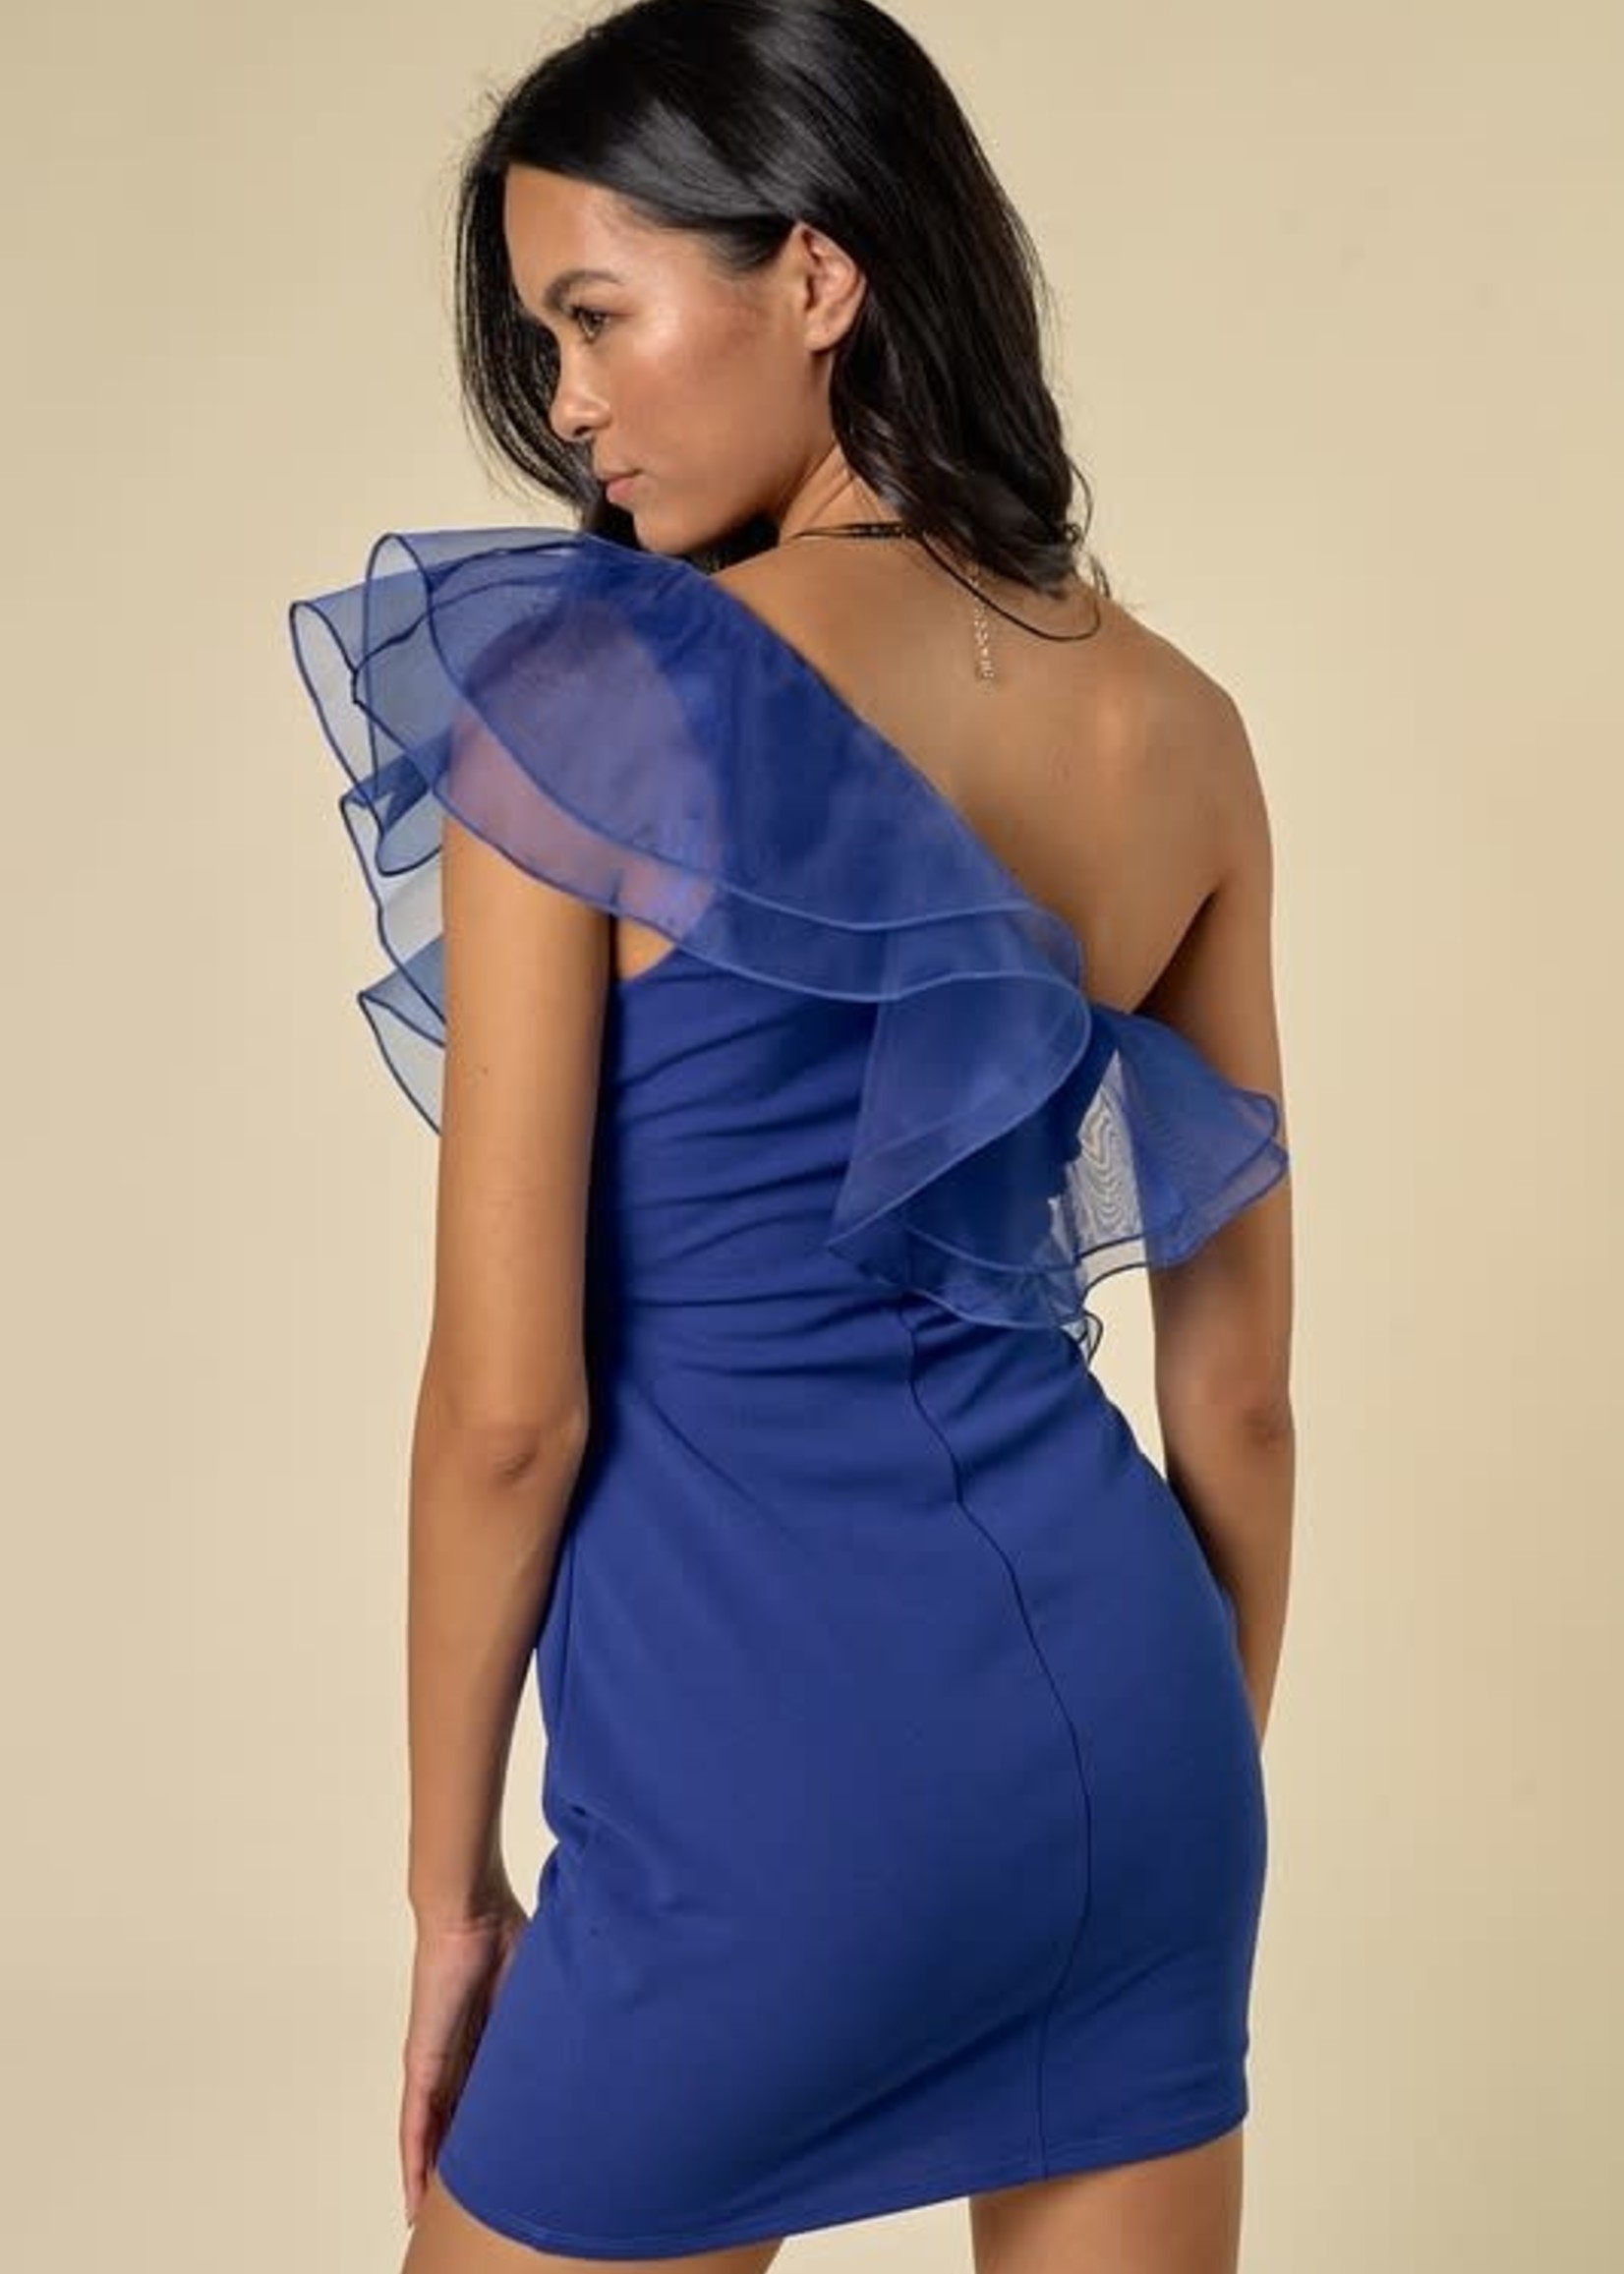 Ruffle Romance Royal Blue Dress